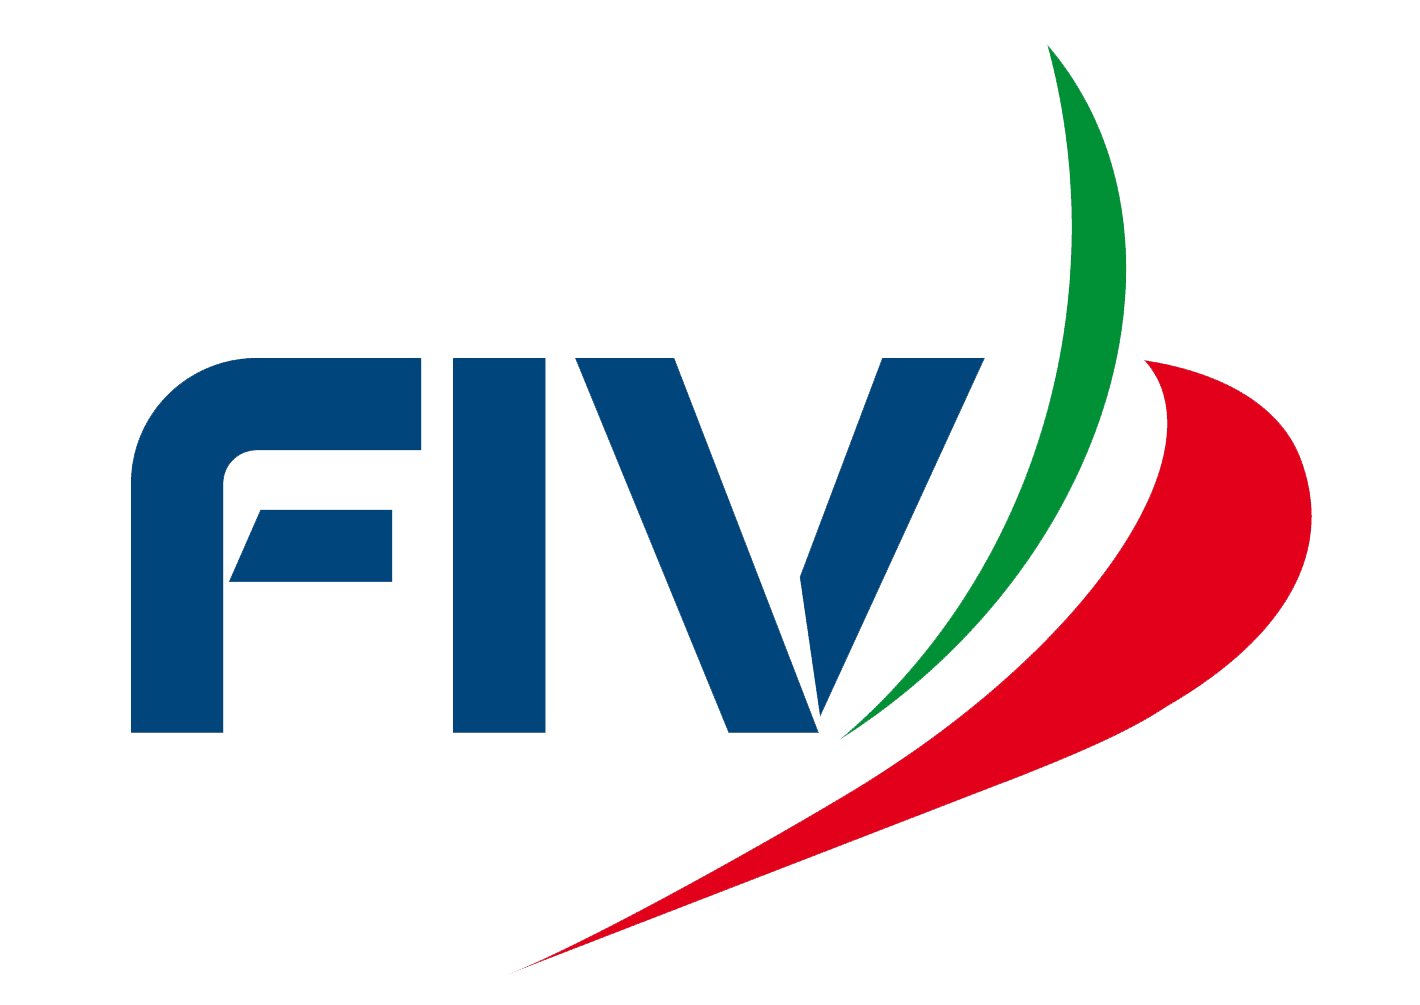 images/fiv/fiv_logo_2_0.png